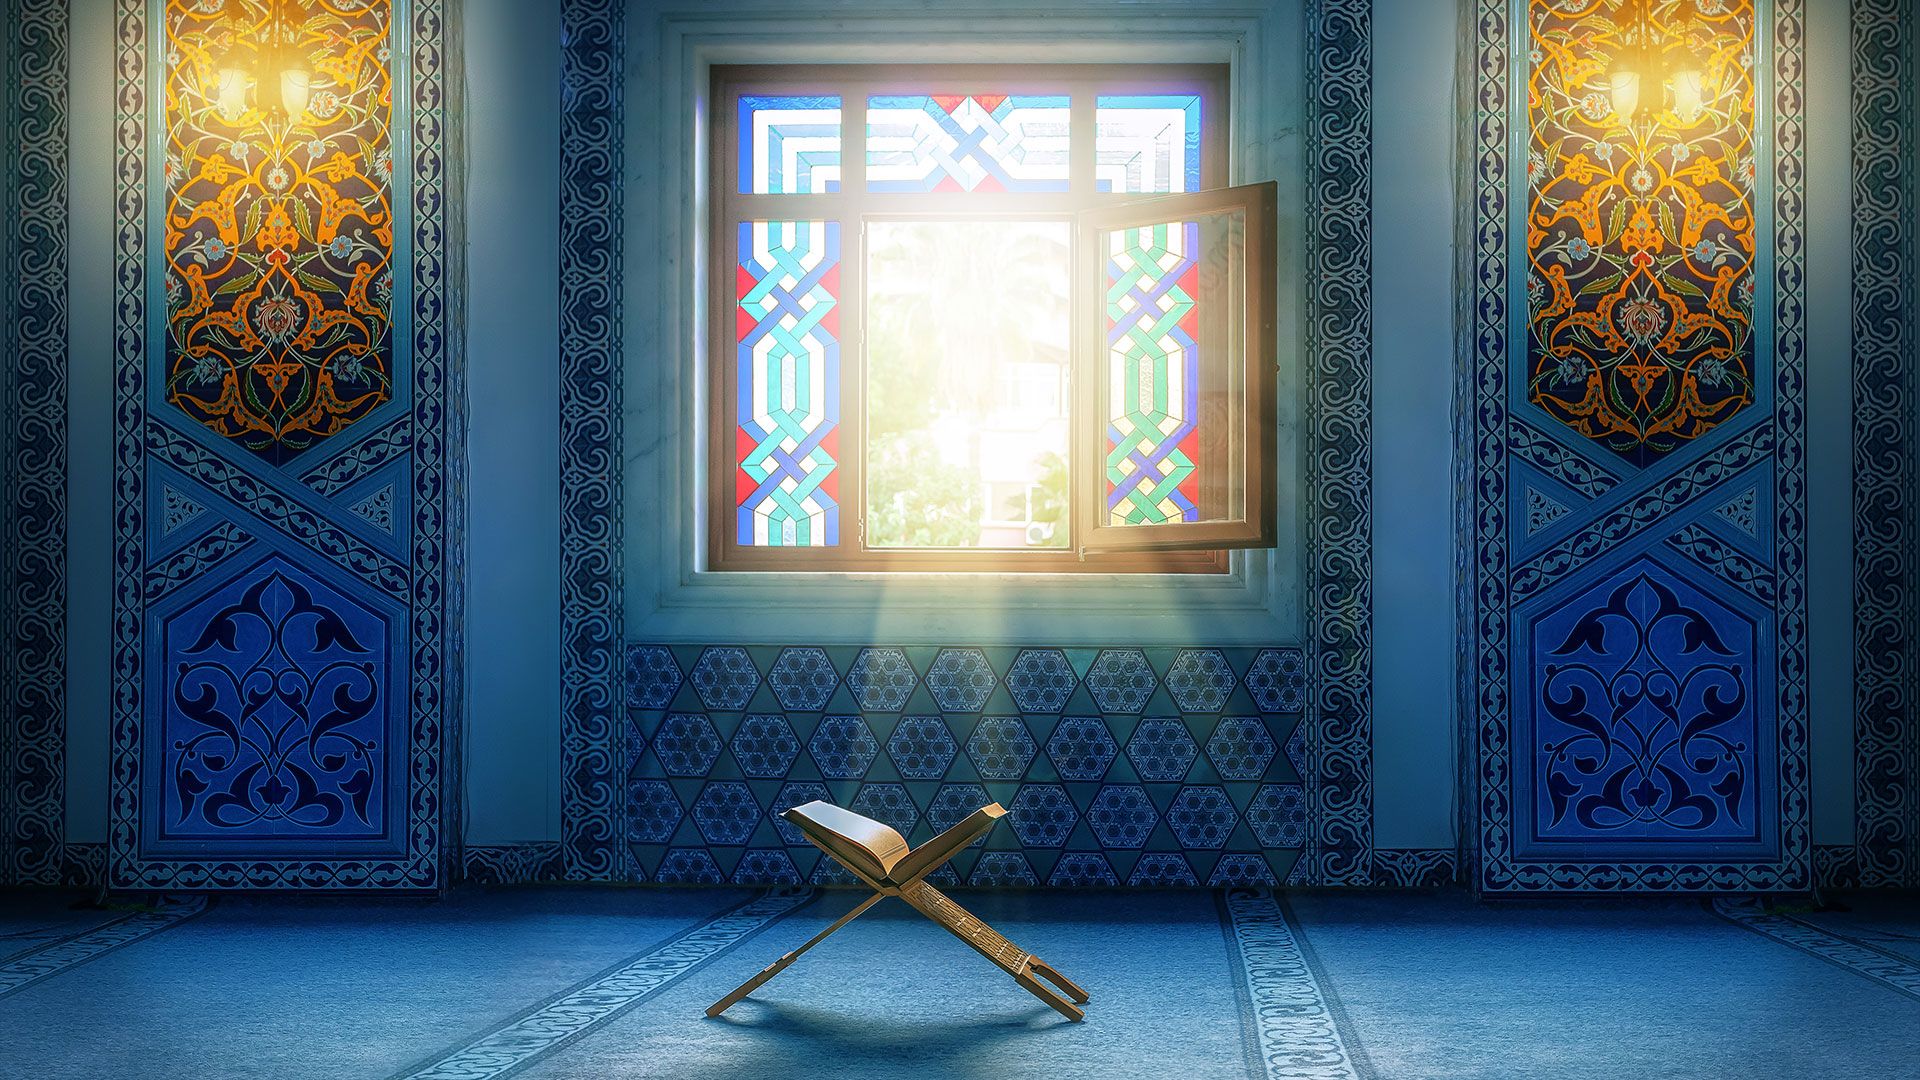 Promotional image for Является ли Ислам промыслом Божьим?